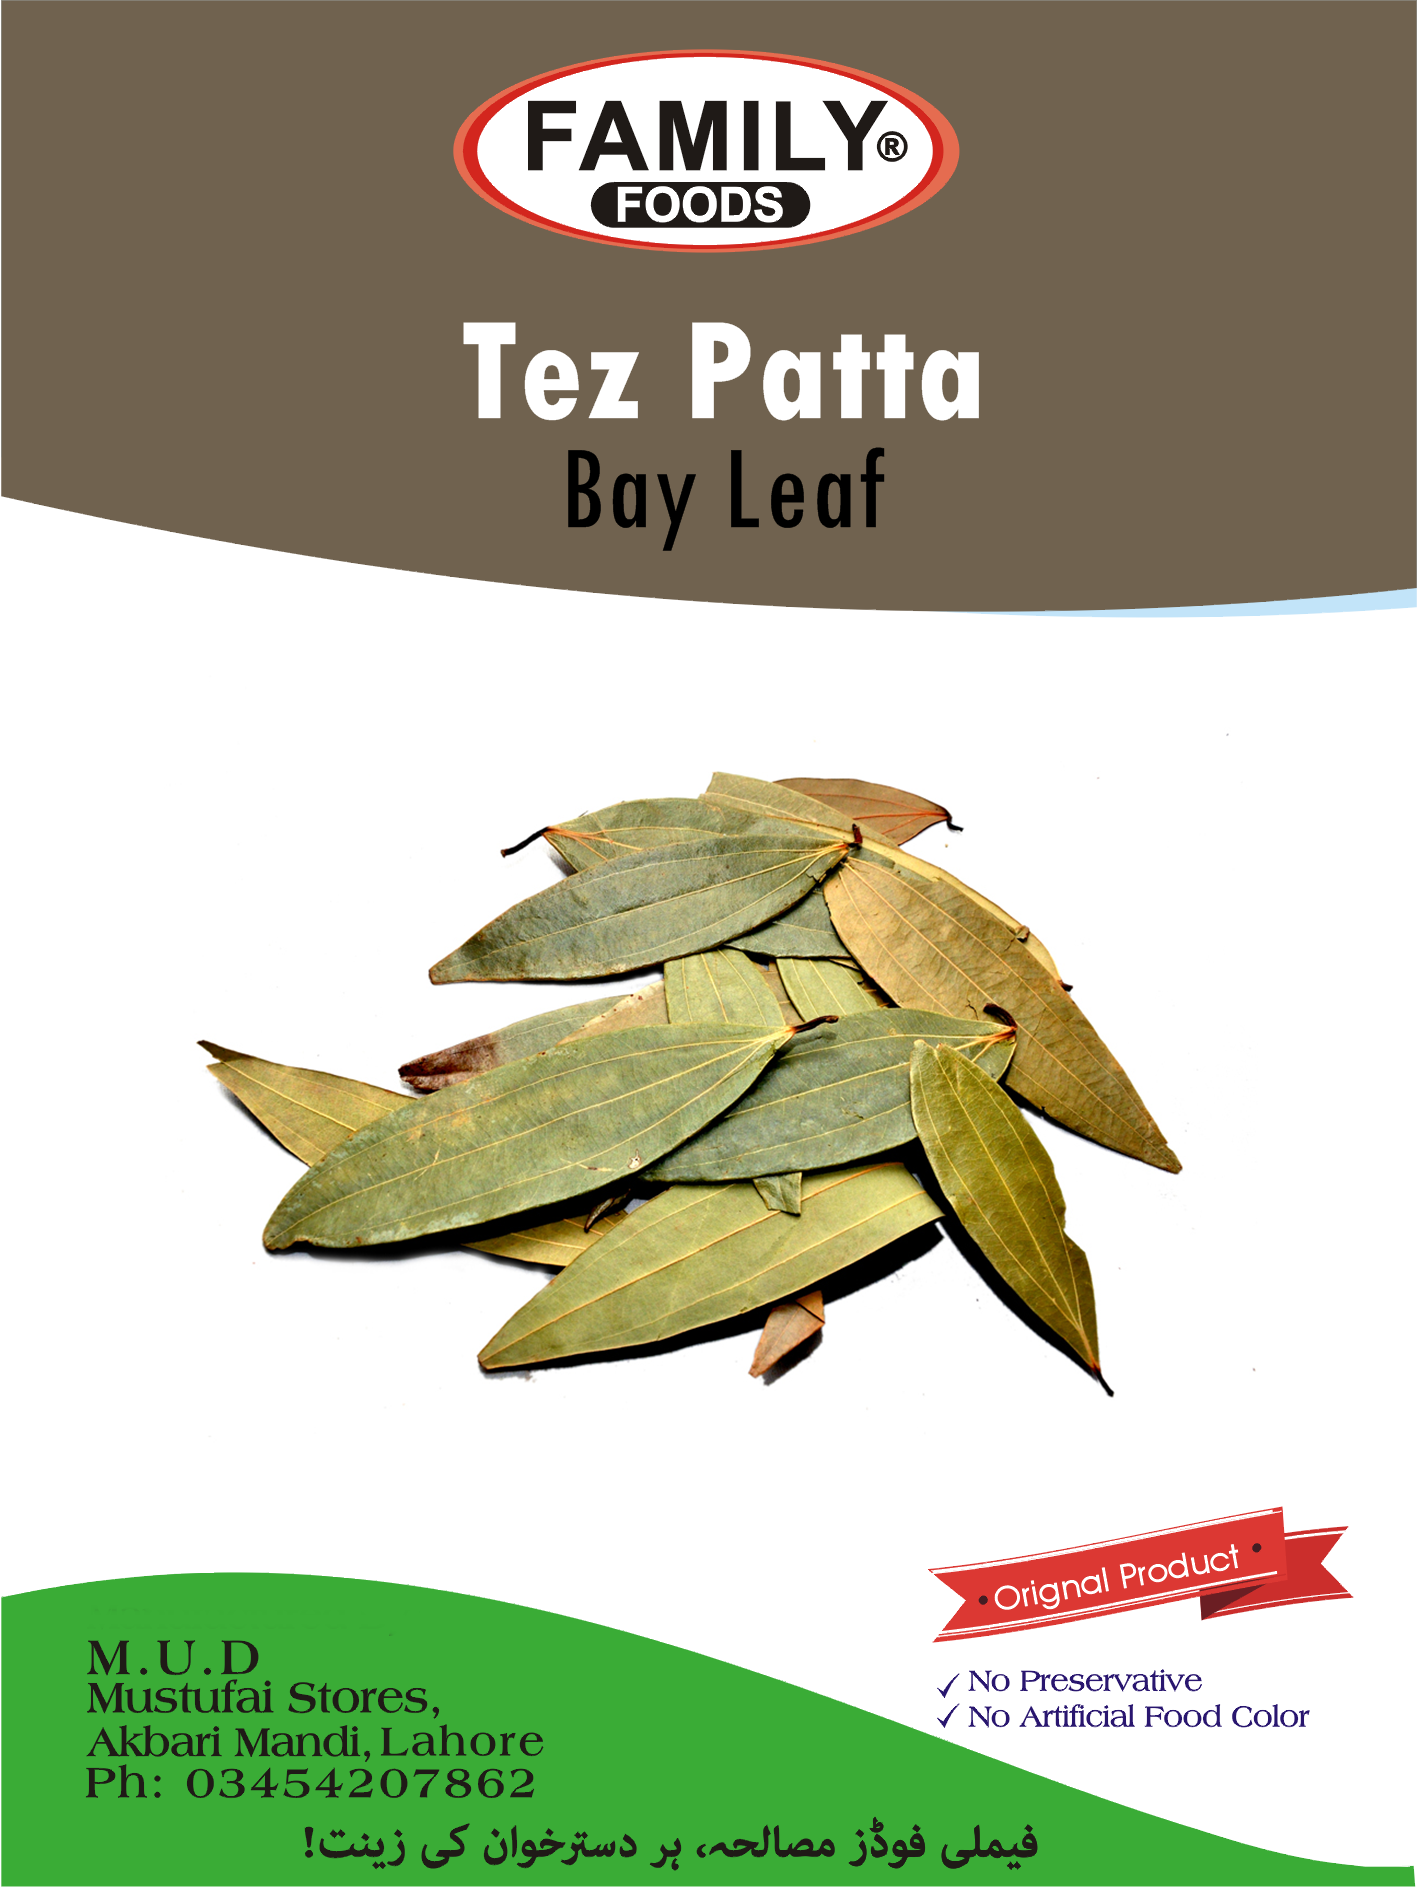 Tez Patta (Bay Leaf)